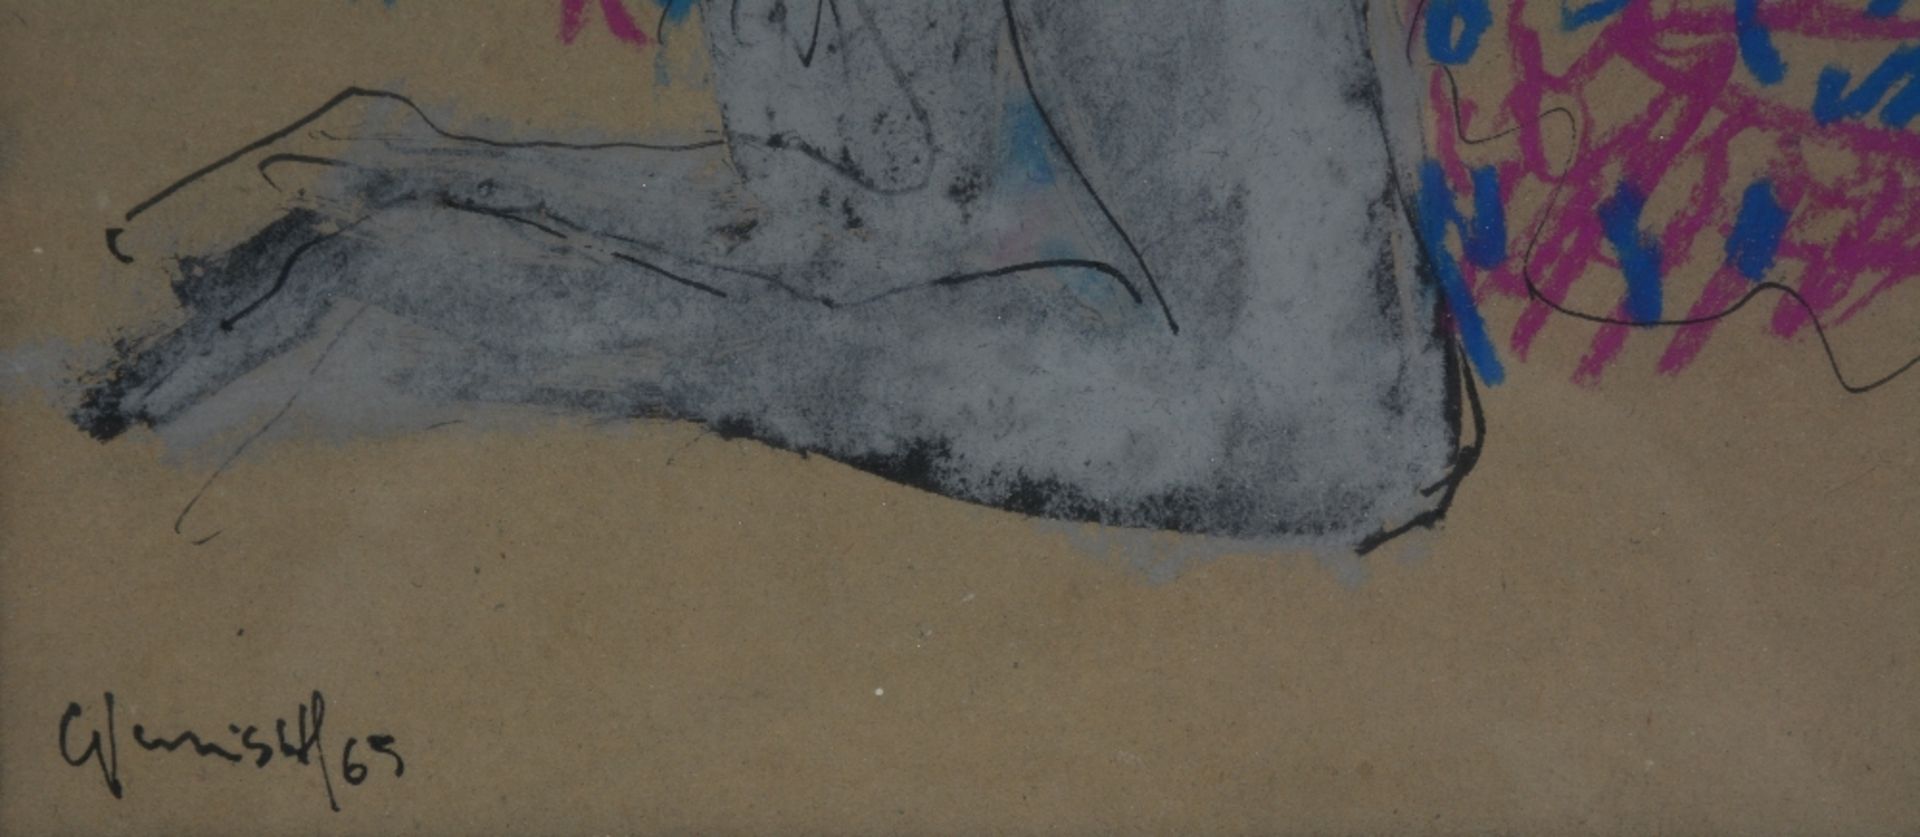 Vervisch G., two female nudes, Indian ink and pastel, 23 x 29 - 23 x 29 cm - Bild 6 aus 6